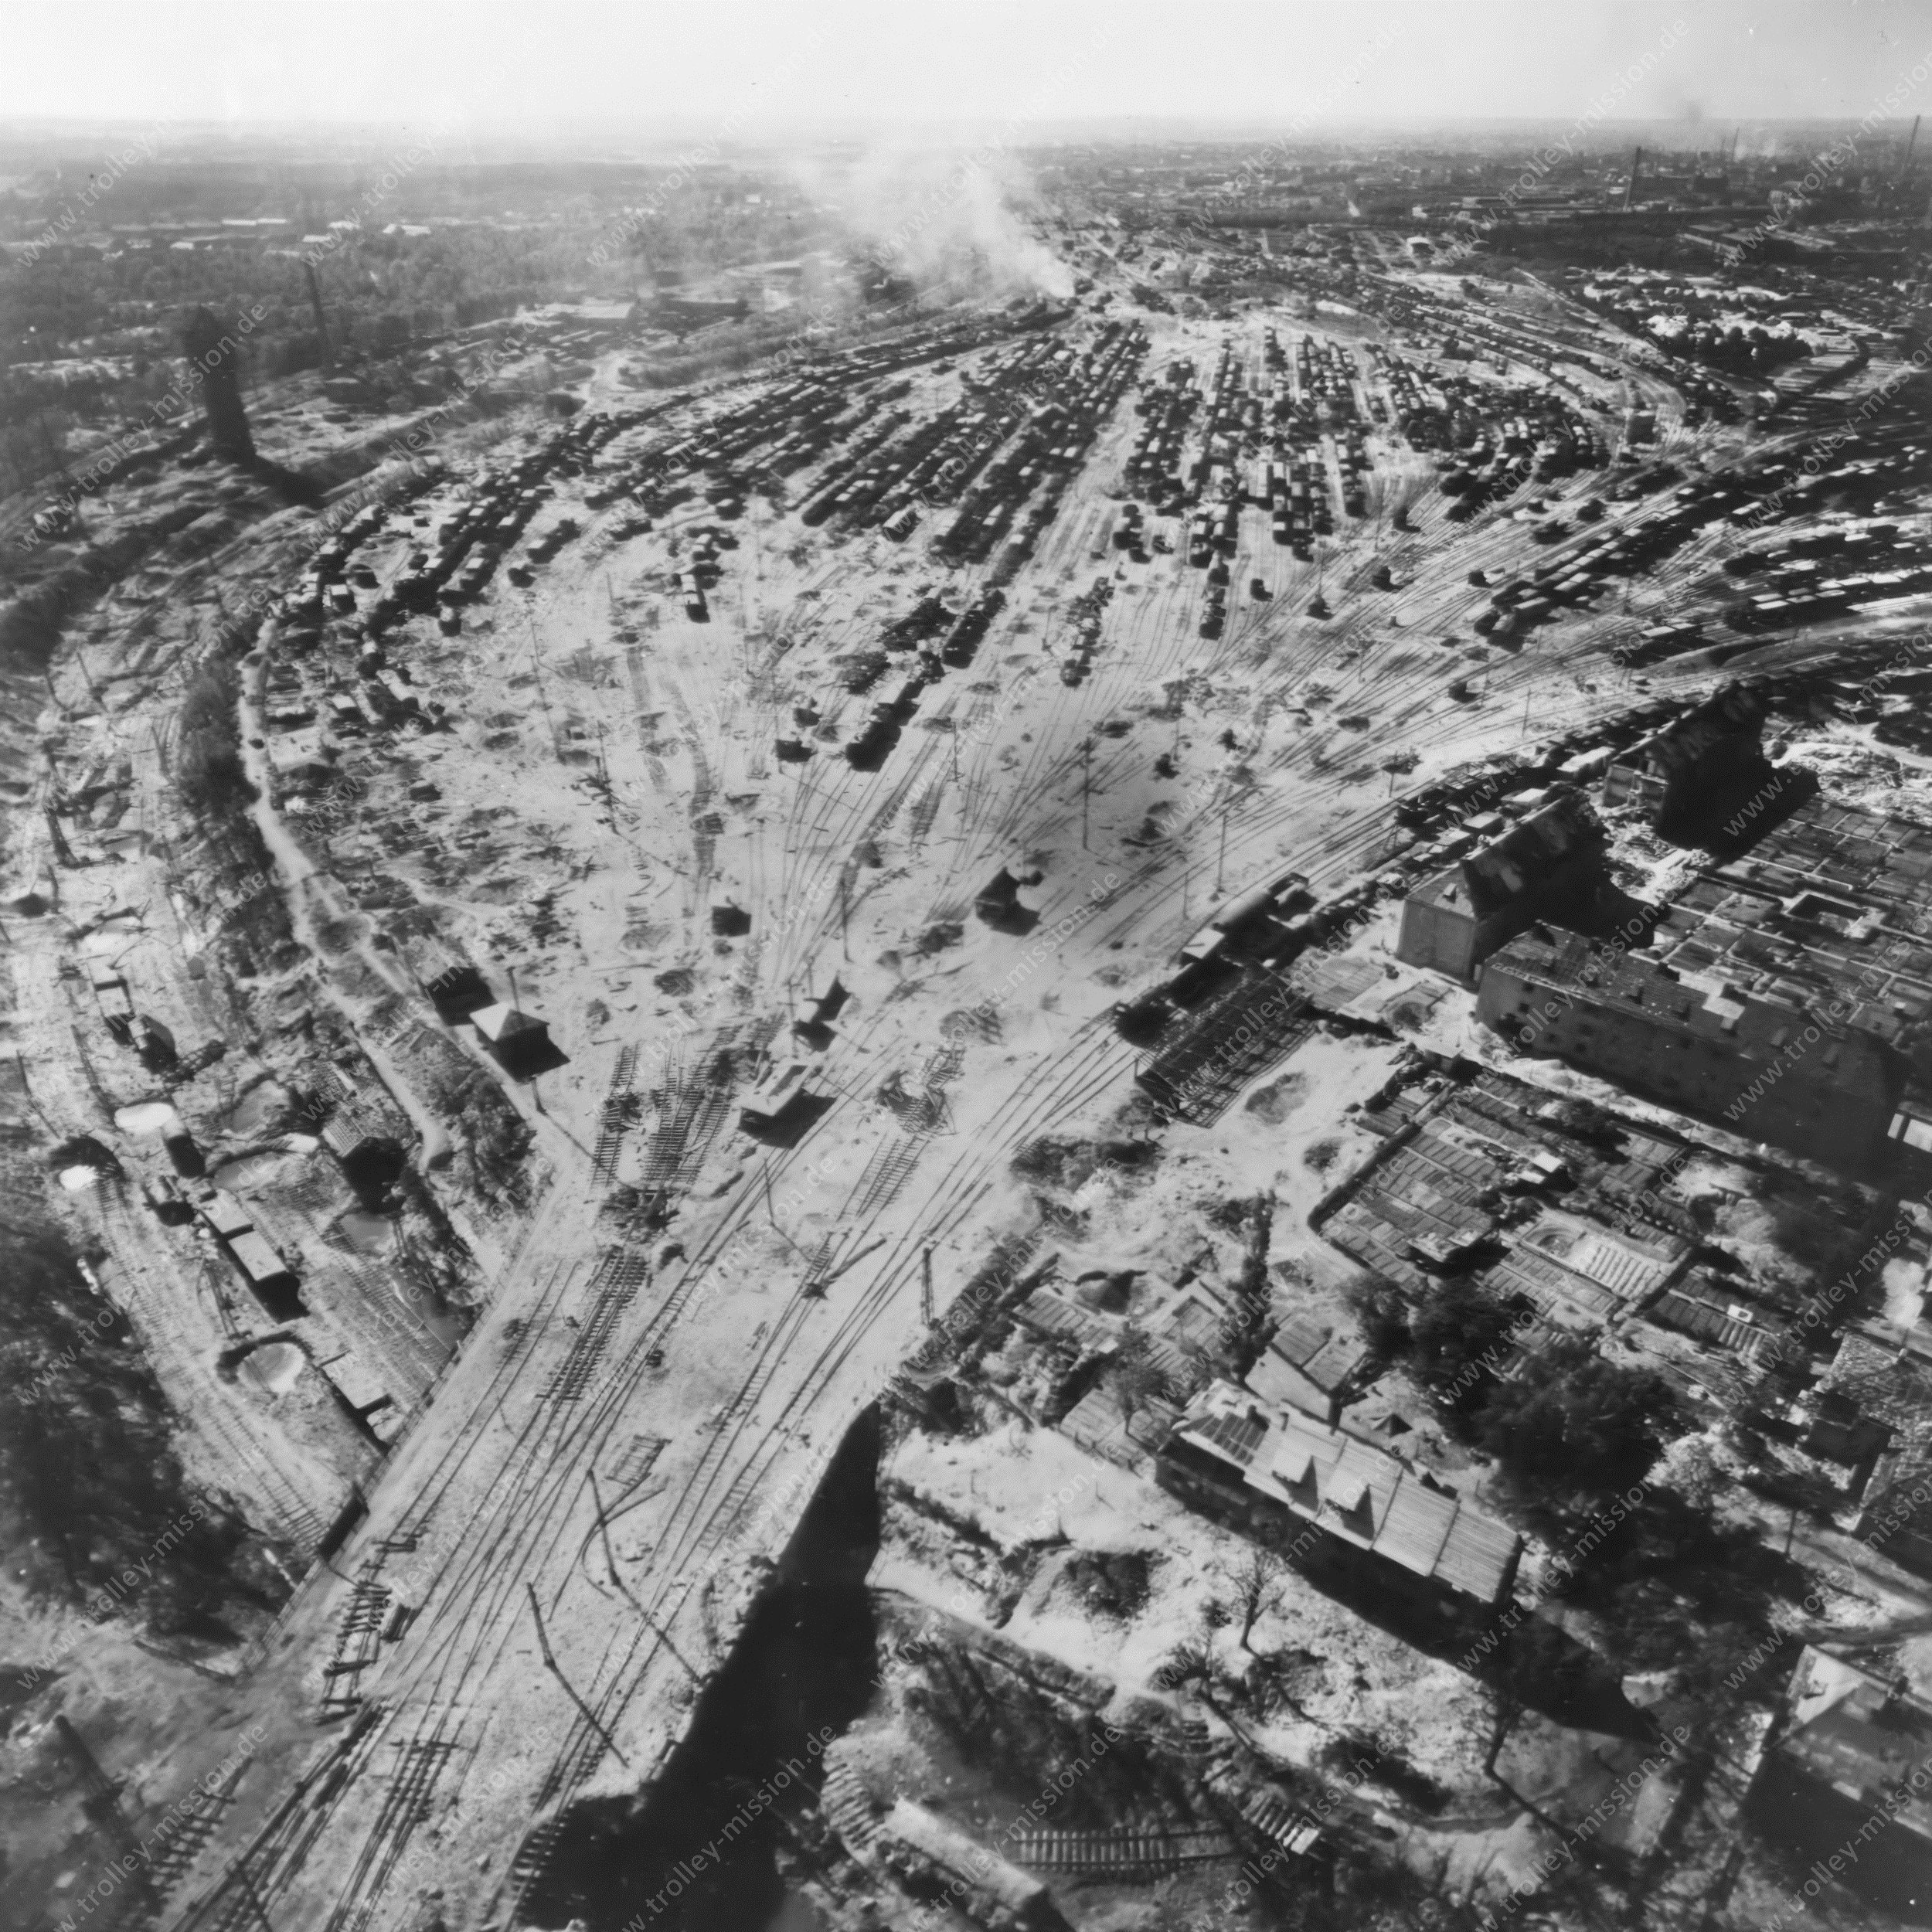 Nürnberg Rangierbahnhof - Luftaufnahme aus dem Zweiten Weltkrieg